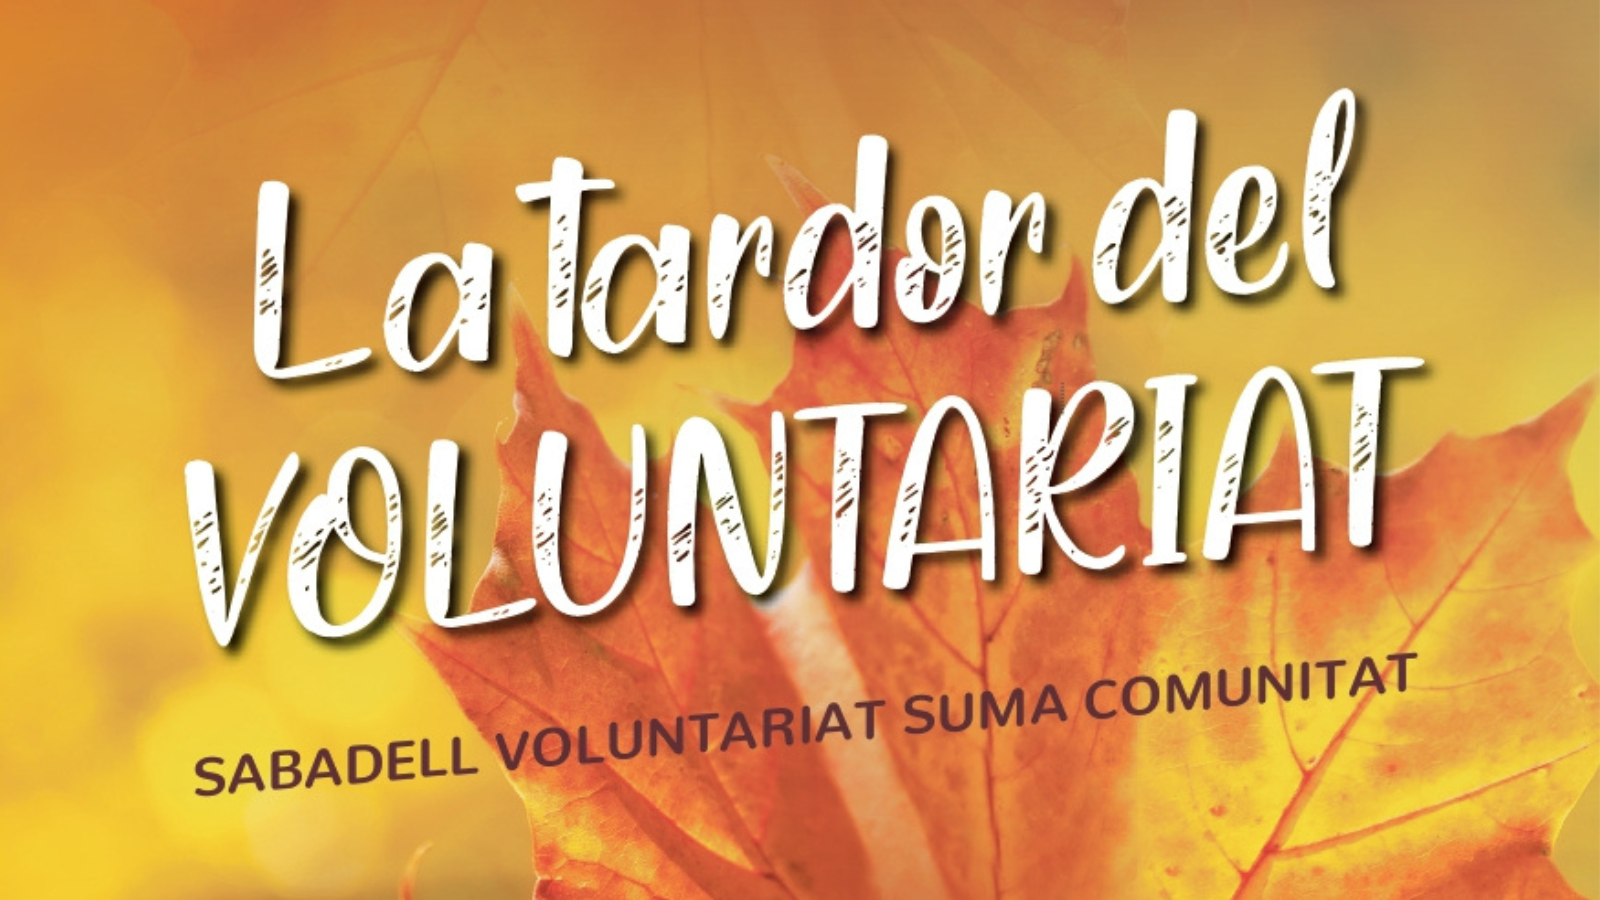 El programa de la Tardor del Voluntariat es presenta amb el lema “Sabadell Voluntariat suma Comunitat”